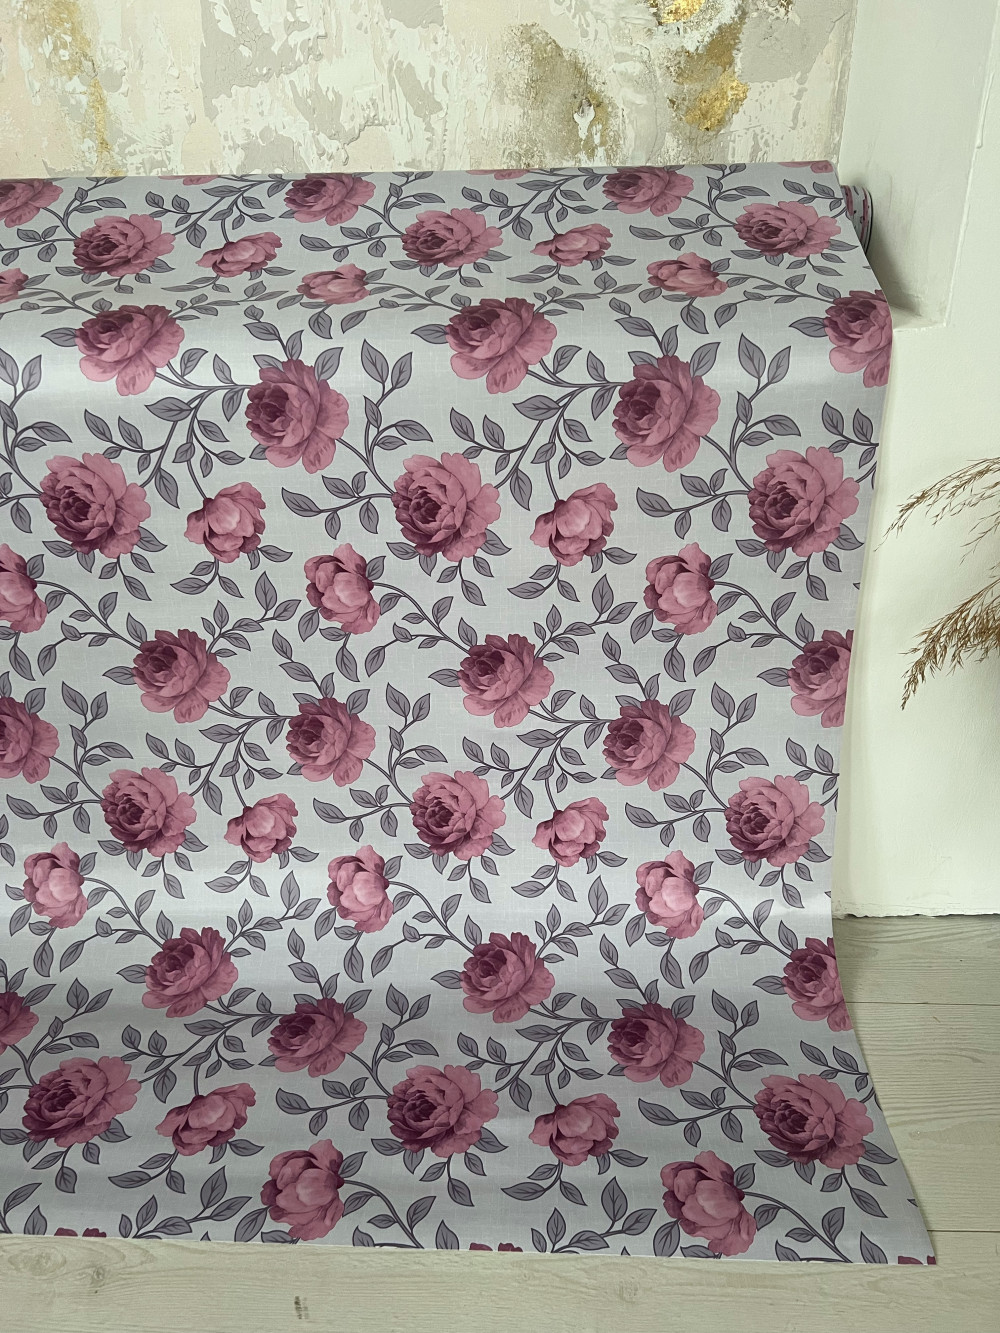 Viaszos vászon asztalterítő Új szürke lila rózsás 140cm széles